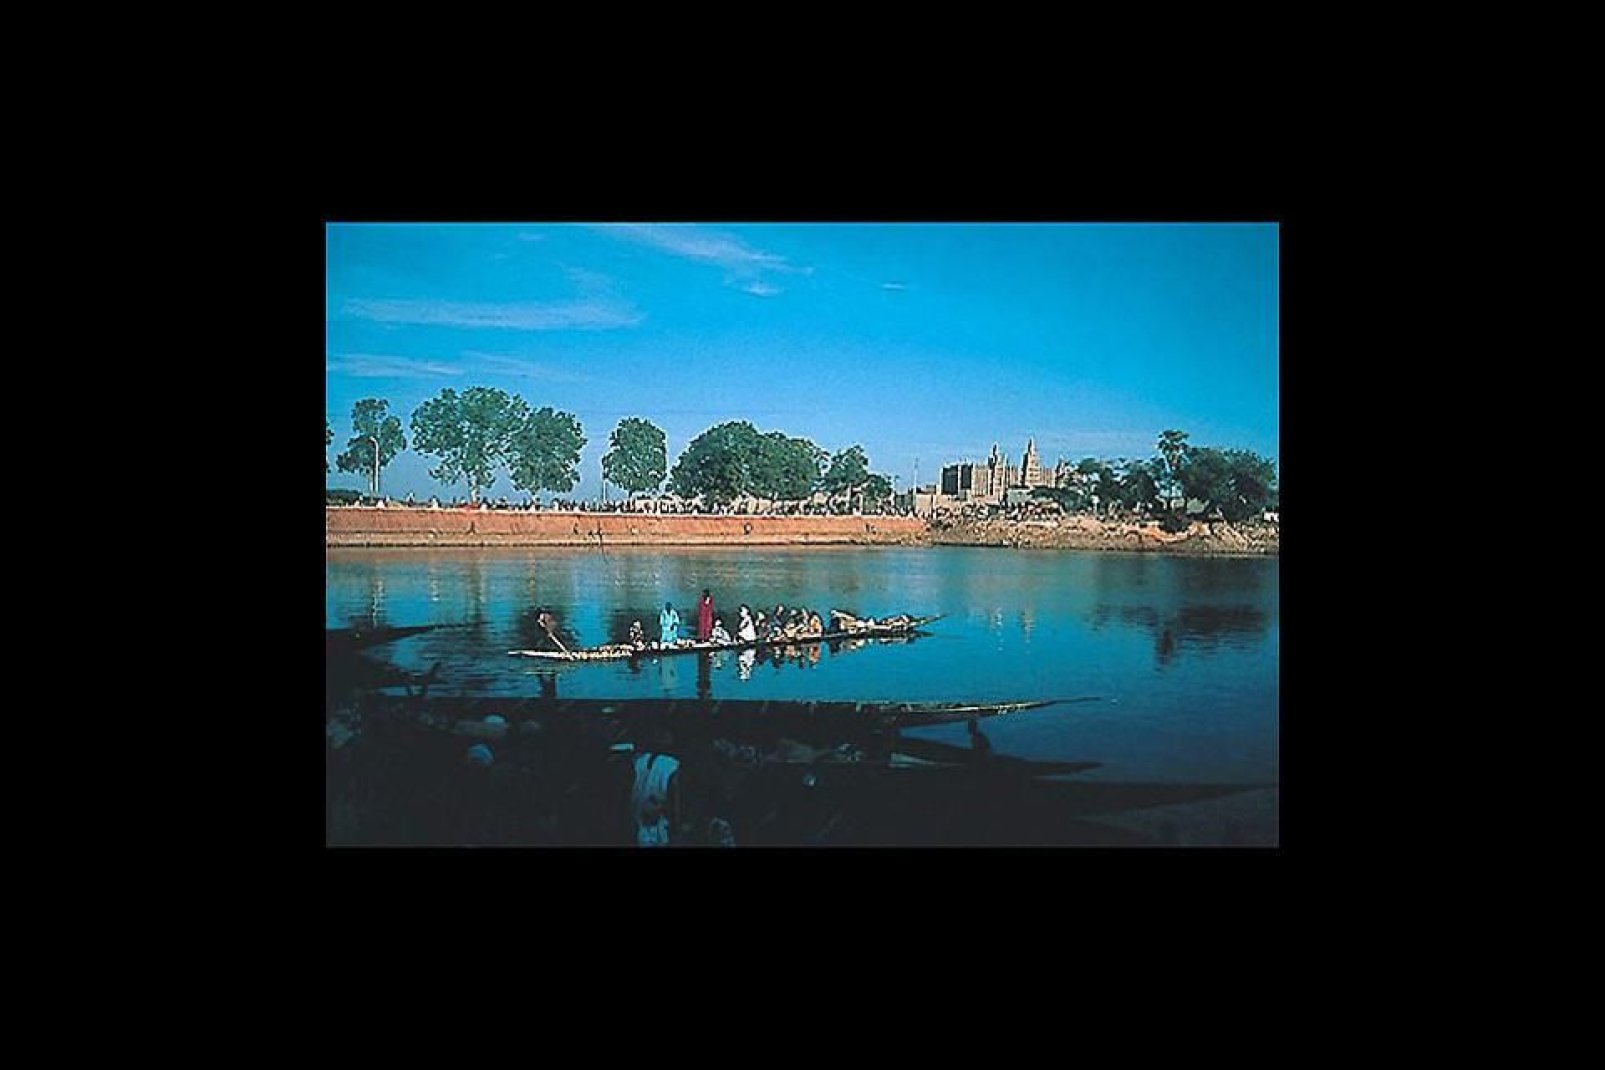 Gao, la ciudad de los tuareg y los songhay, se sitúa a orillas del río Níger y cuenta con un patrimonio arqueológico extraordinario.